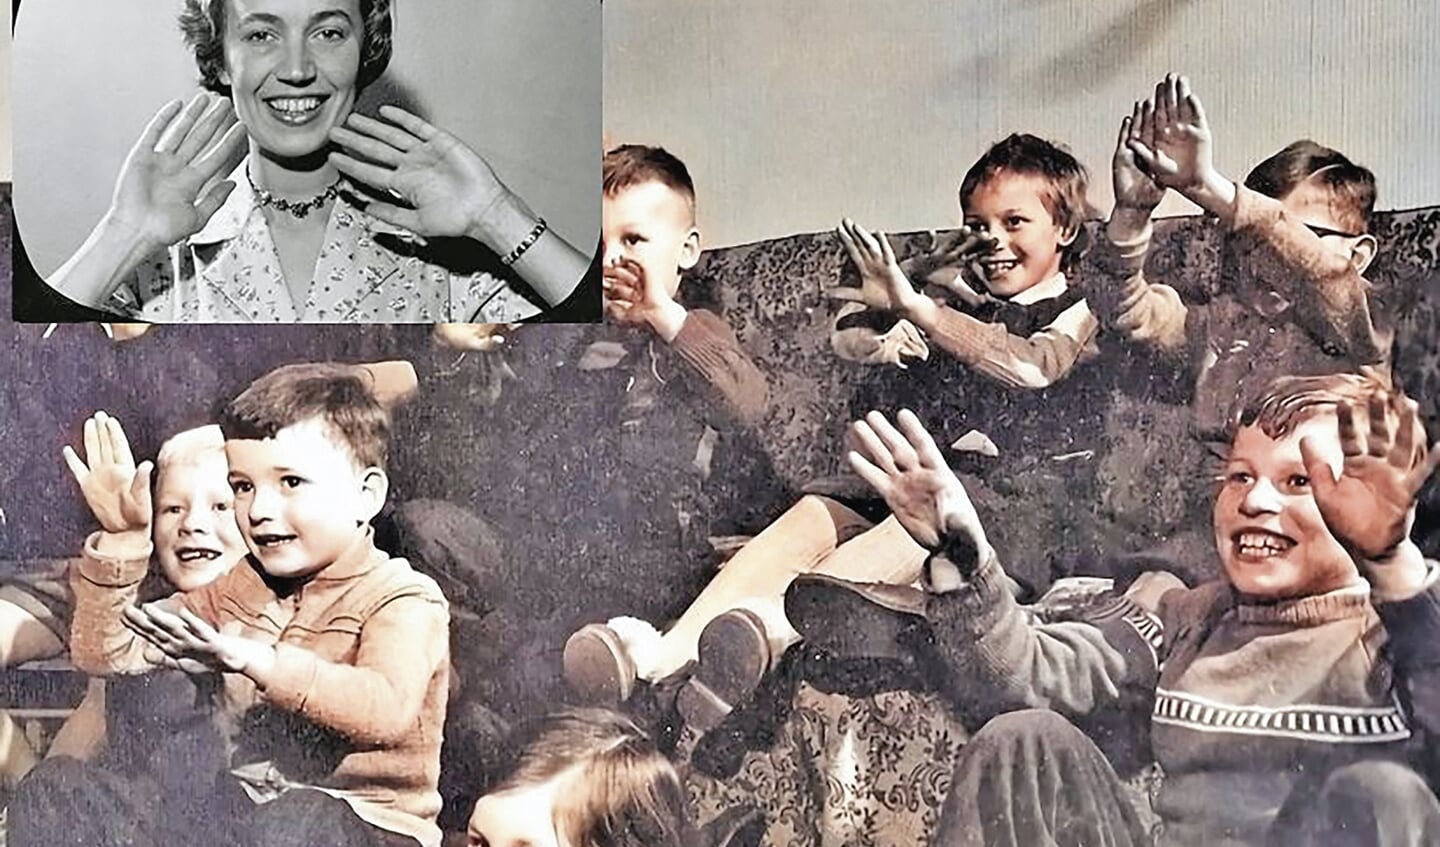 In de jaren 50 en 60 werden de televisieprogramma's nog aan- en afgekondigd door omroepsters. Hannie Lips, liefkozend ook wel 'tante Hannie' genoemd, was de eerste die vanaf 1954 voor de K.R.O. kinderprogramma's aankondigde. Bij het afscheid zwaaide zij met beide handen naar de kinderen en alle kinderen in de huiskamer zwaaiden enthousiast terug.